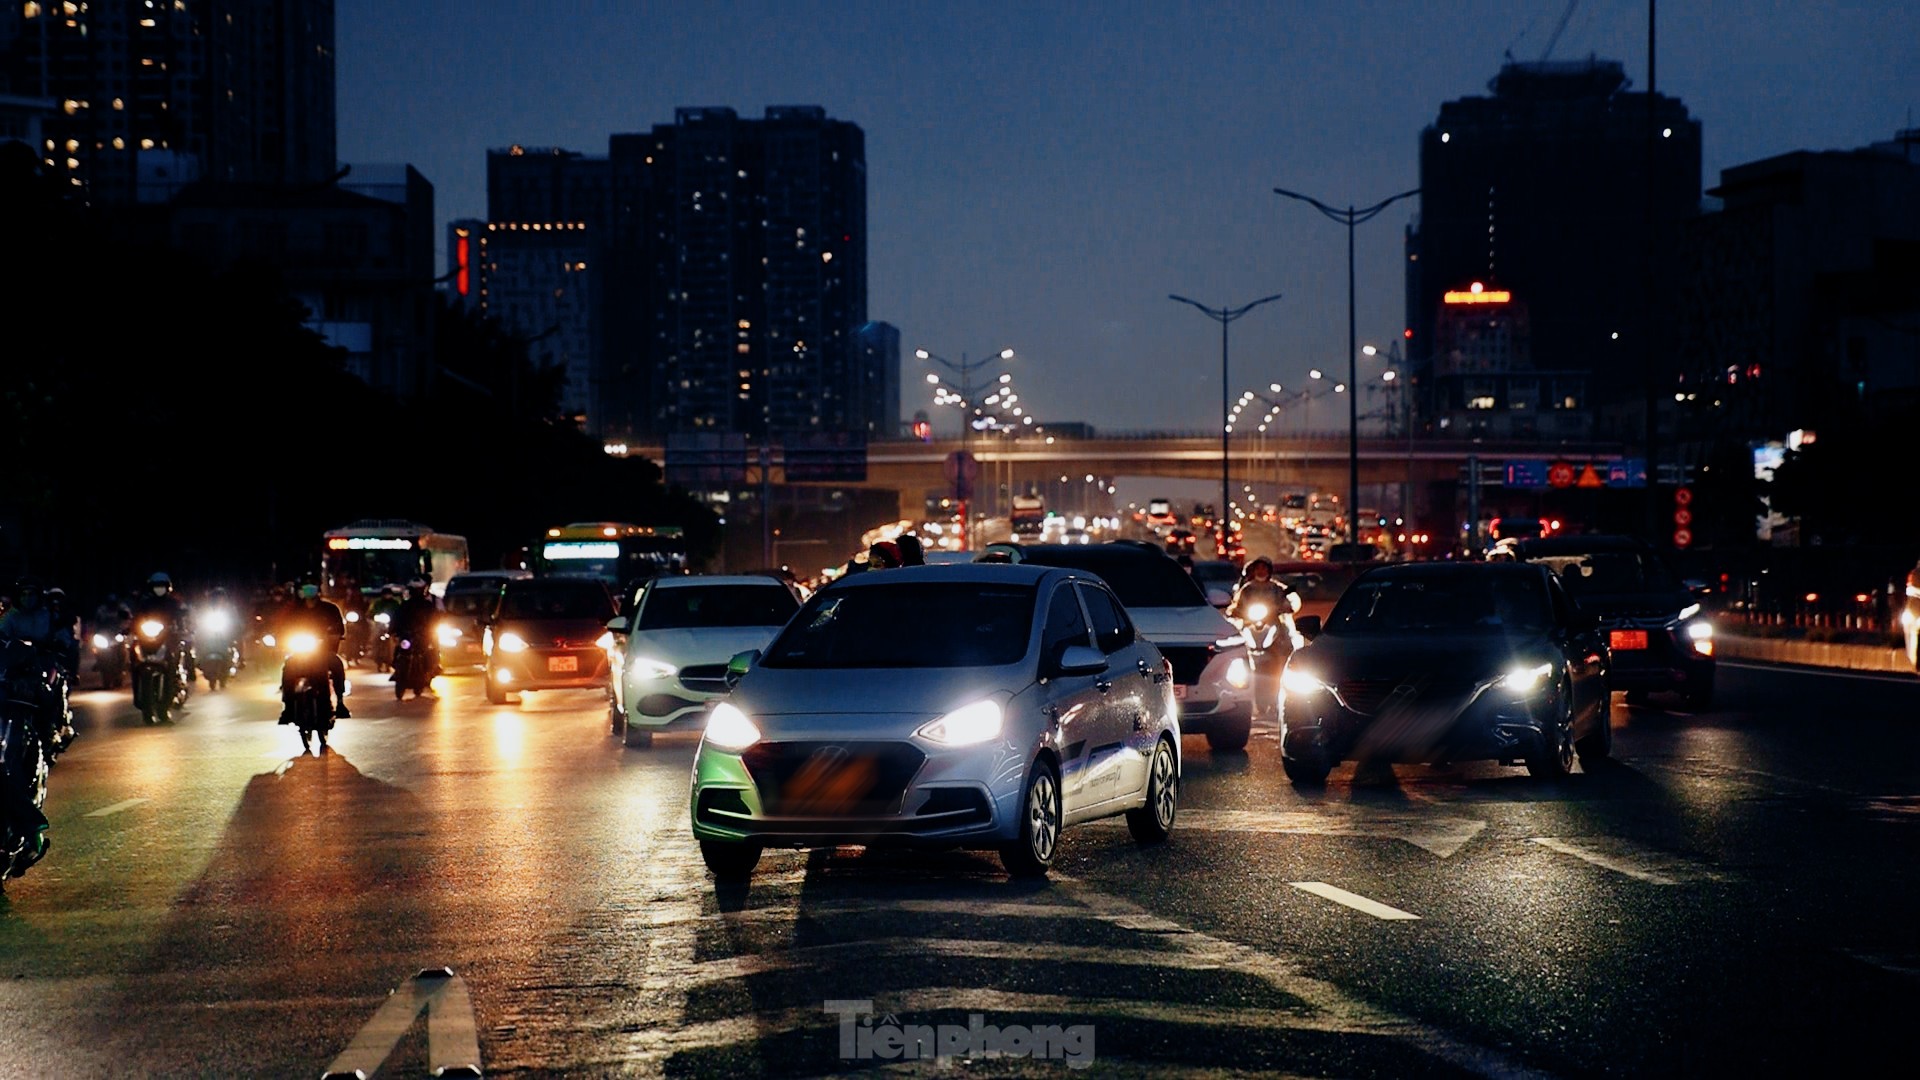 Thông xe cầu vượt Mai Dịch, vì sao giao thông vẫn hỗn loạn? ảnh 8